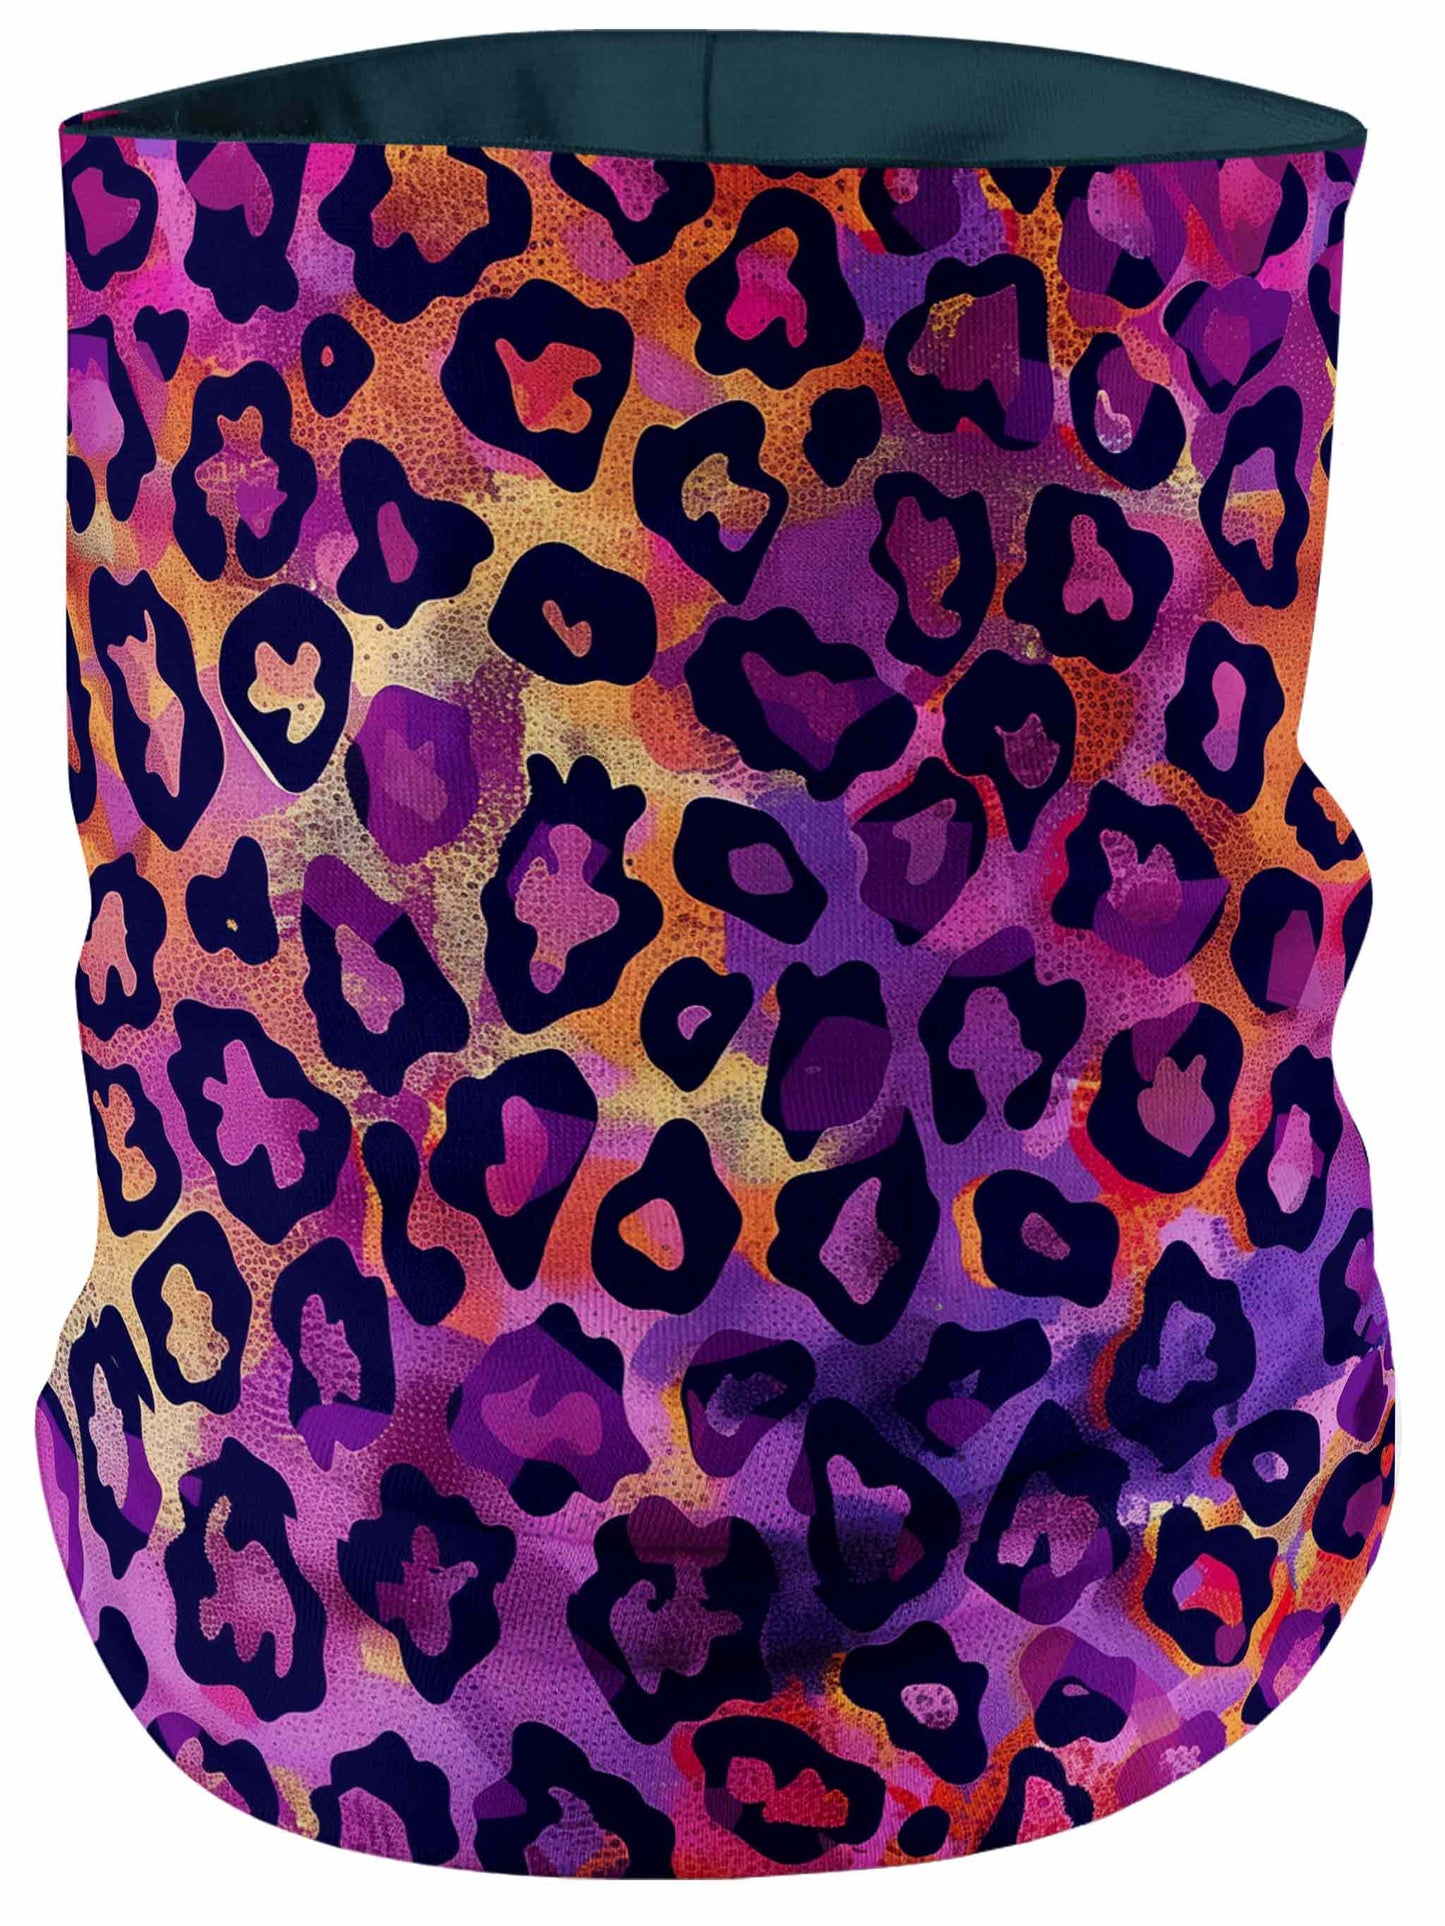 Neon Leopard Bandana Mask, iEDM, | iEDM